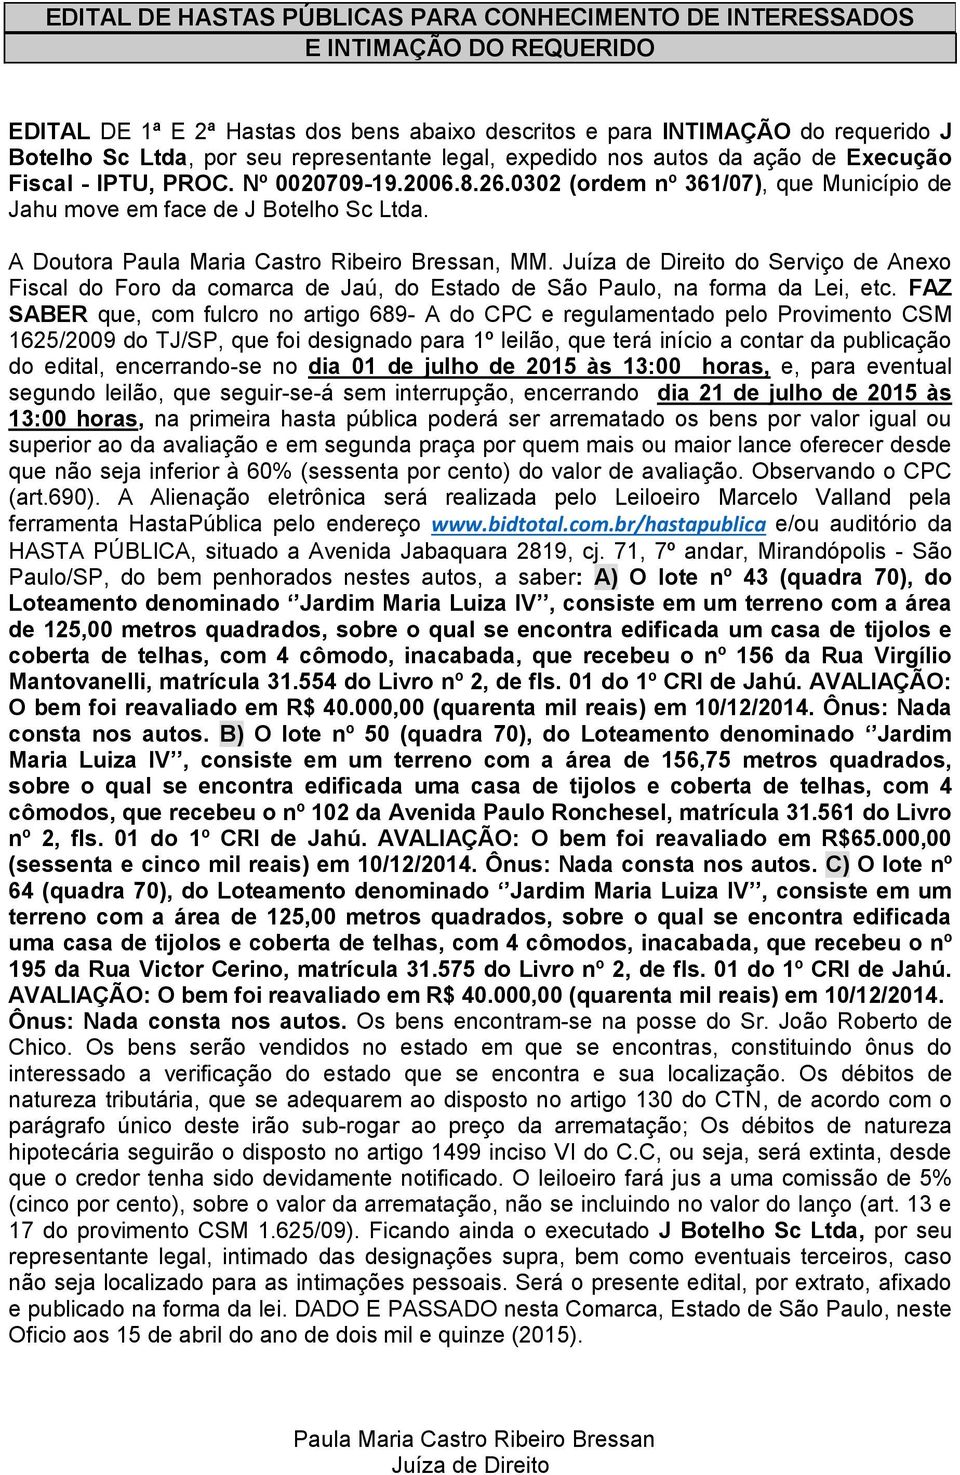 Juíza de Direito do Serviço de Anexo Fiscal do Foro da comarca de Jaú, do Estado de São Paulo, na forma da Lei, etc.